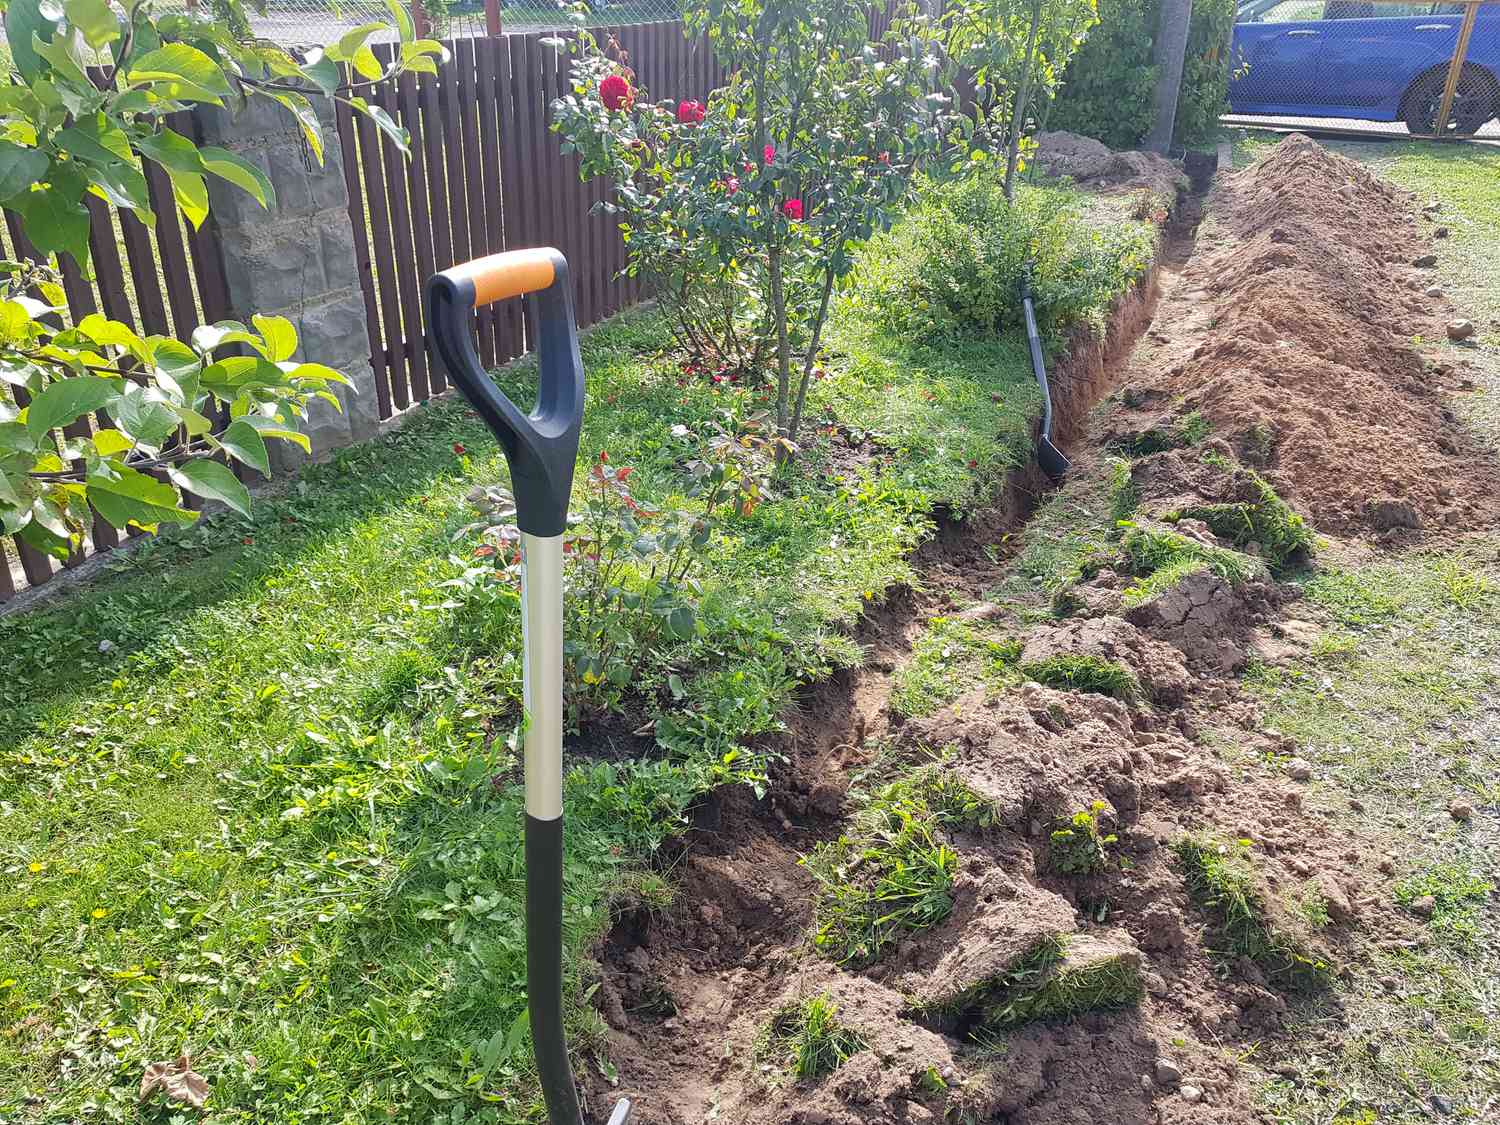 Cavando um dreno francês no quintal